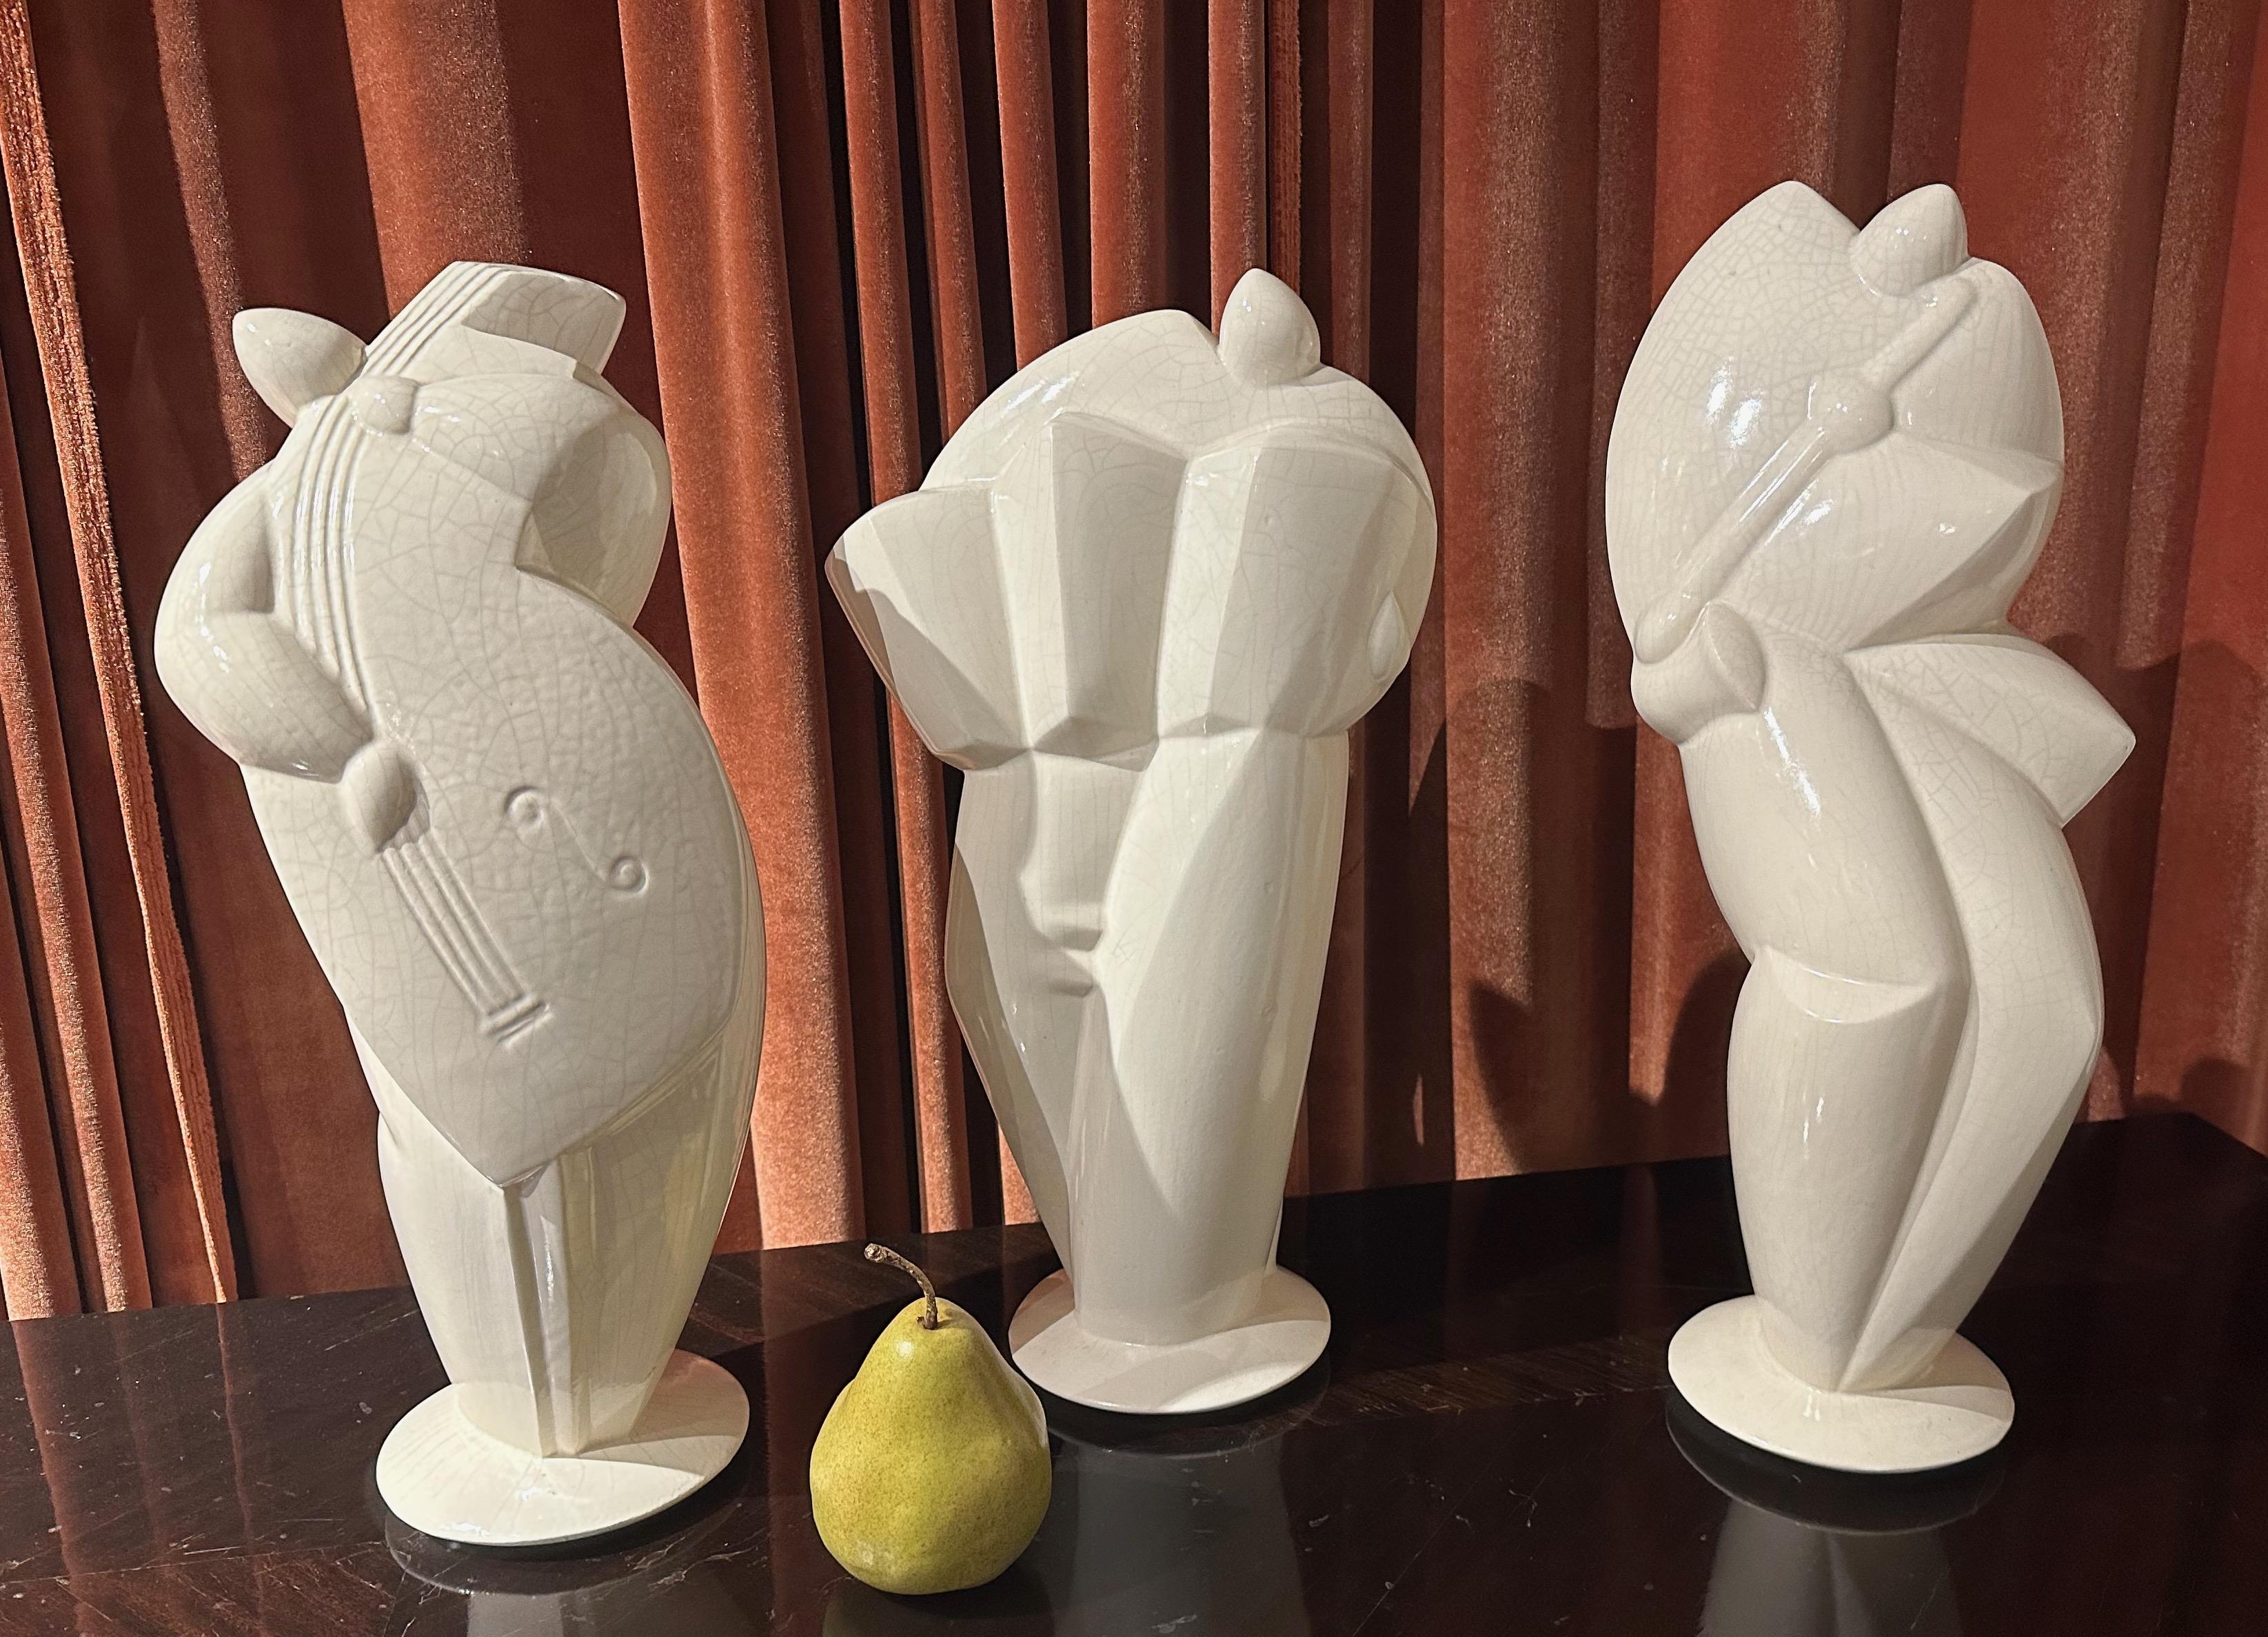 Trois sculptures de musiciens de style cubiste Art déco en céramique. Ces grandes statues sont réalisées selon une technique française appelée Calle. Elles sont signées et numérotées 